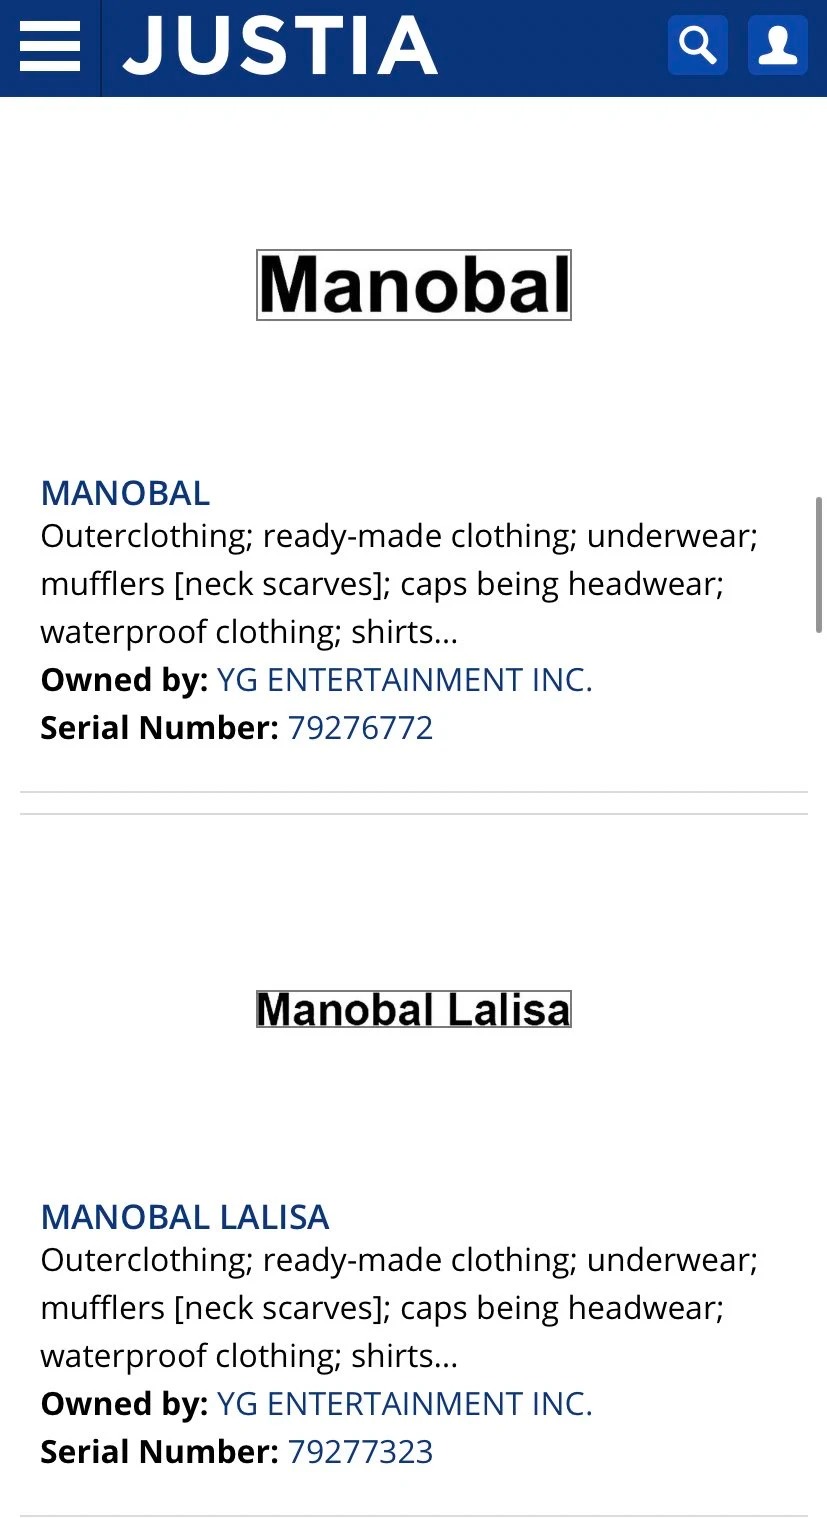 Tin thời trang về việc YG Entertainment đăng kí bản quyền 2 nhãn hiệu "Manobal" và "Manobal Lalisa" - tên thật của Lisa BLACKPINK